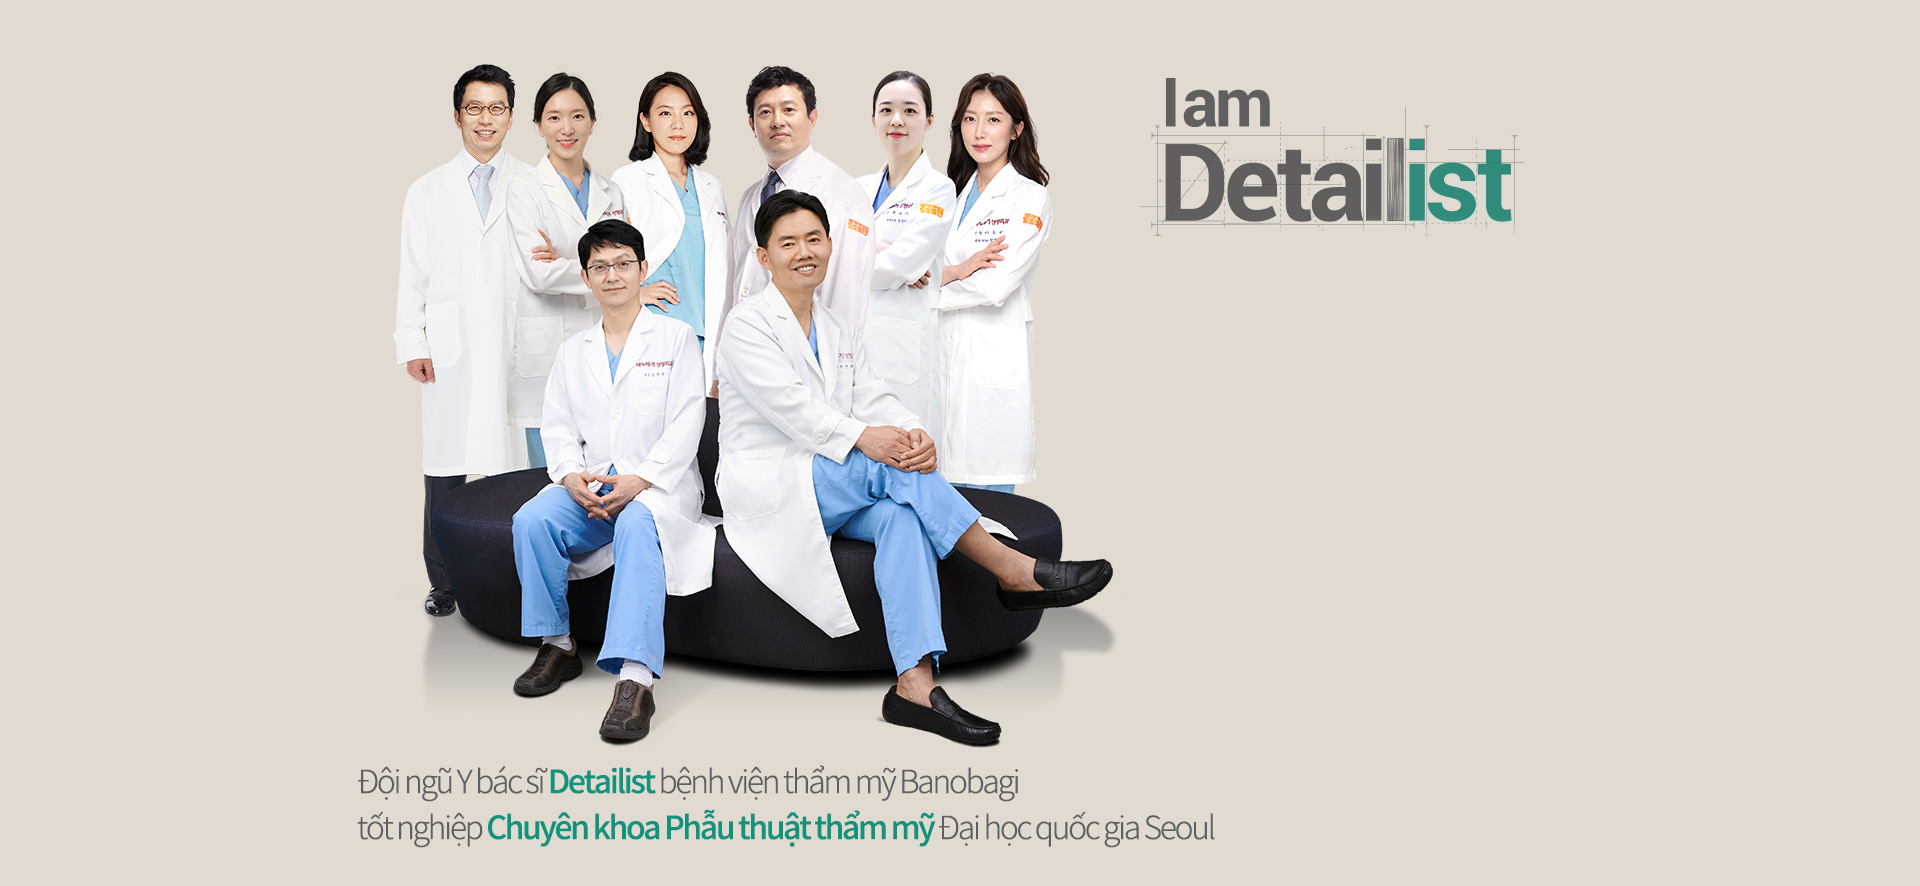 Đội ngũ Y bác sĩ Detailist bệnh viện thẩm mỹ Banobagi tốt nghiệp Chuyên khoa Phẫu thuật thẩm mỹ Đại học quốc gia Seoul